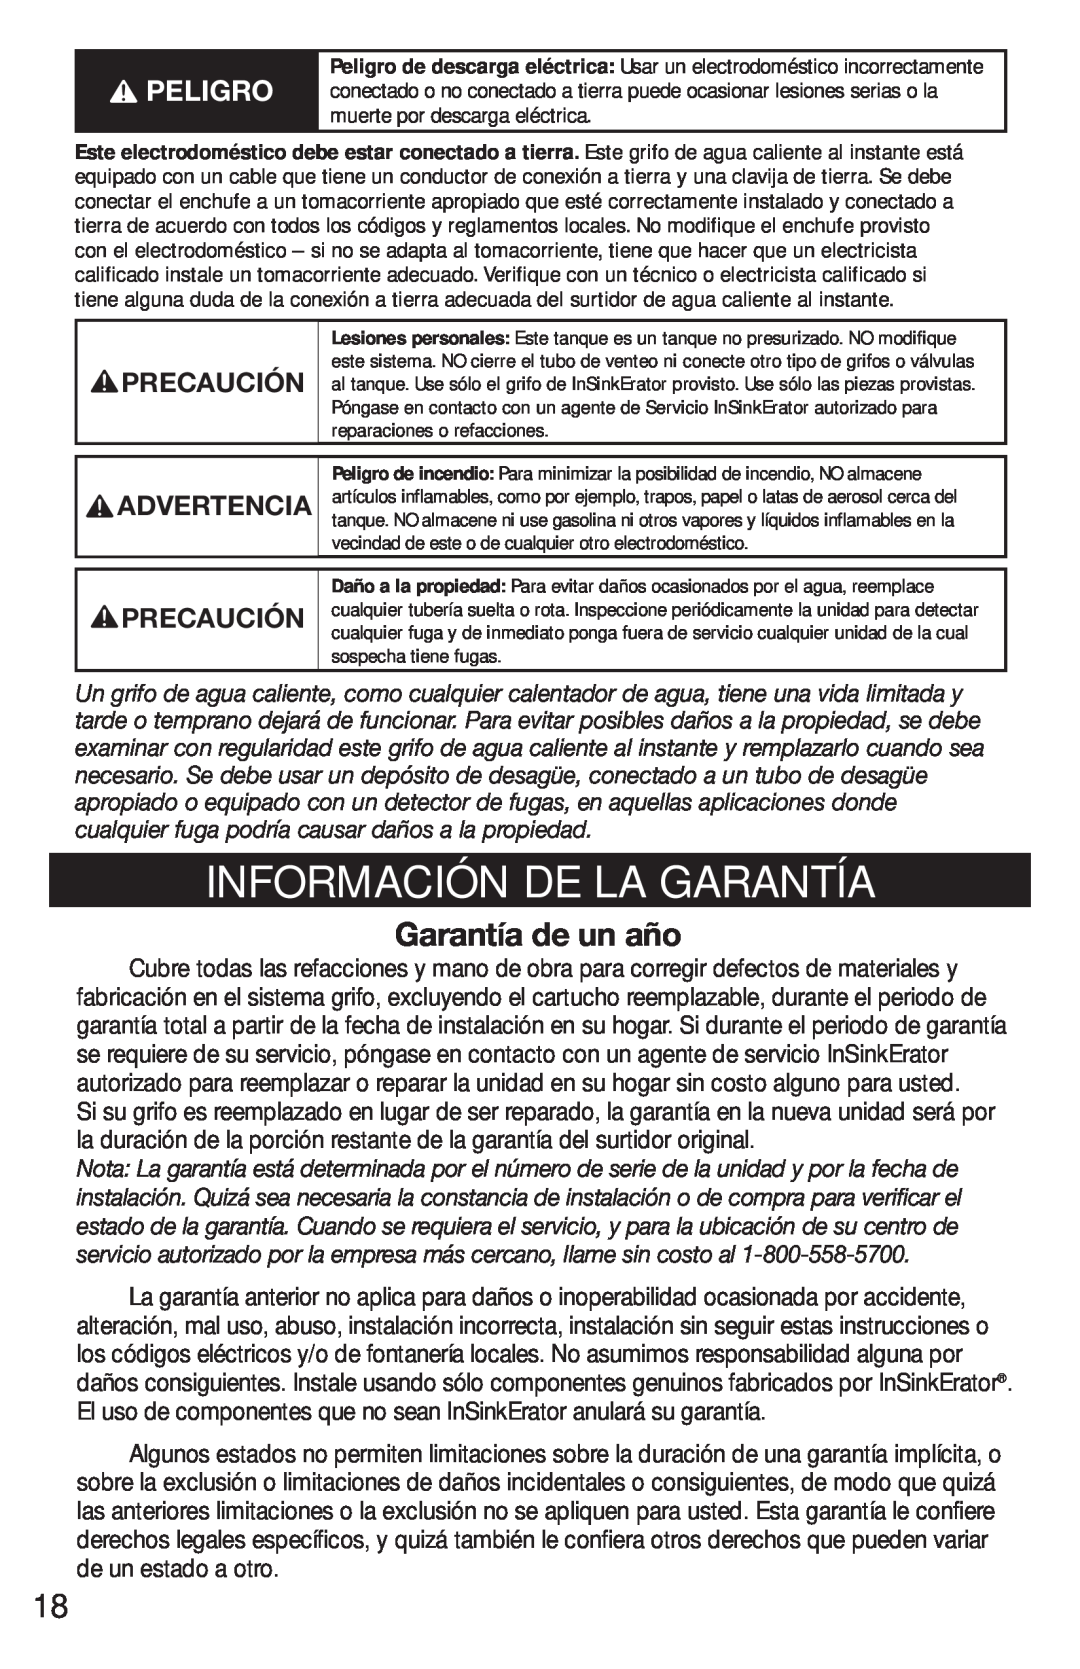 InSinkErator FAUCET owner manual Información De La Garantía, Garantía de un año, Advertencia, Precaución 